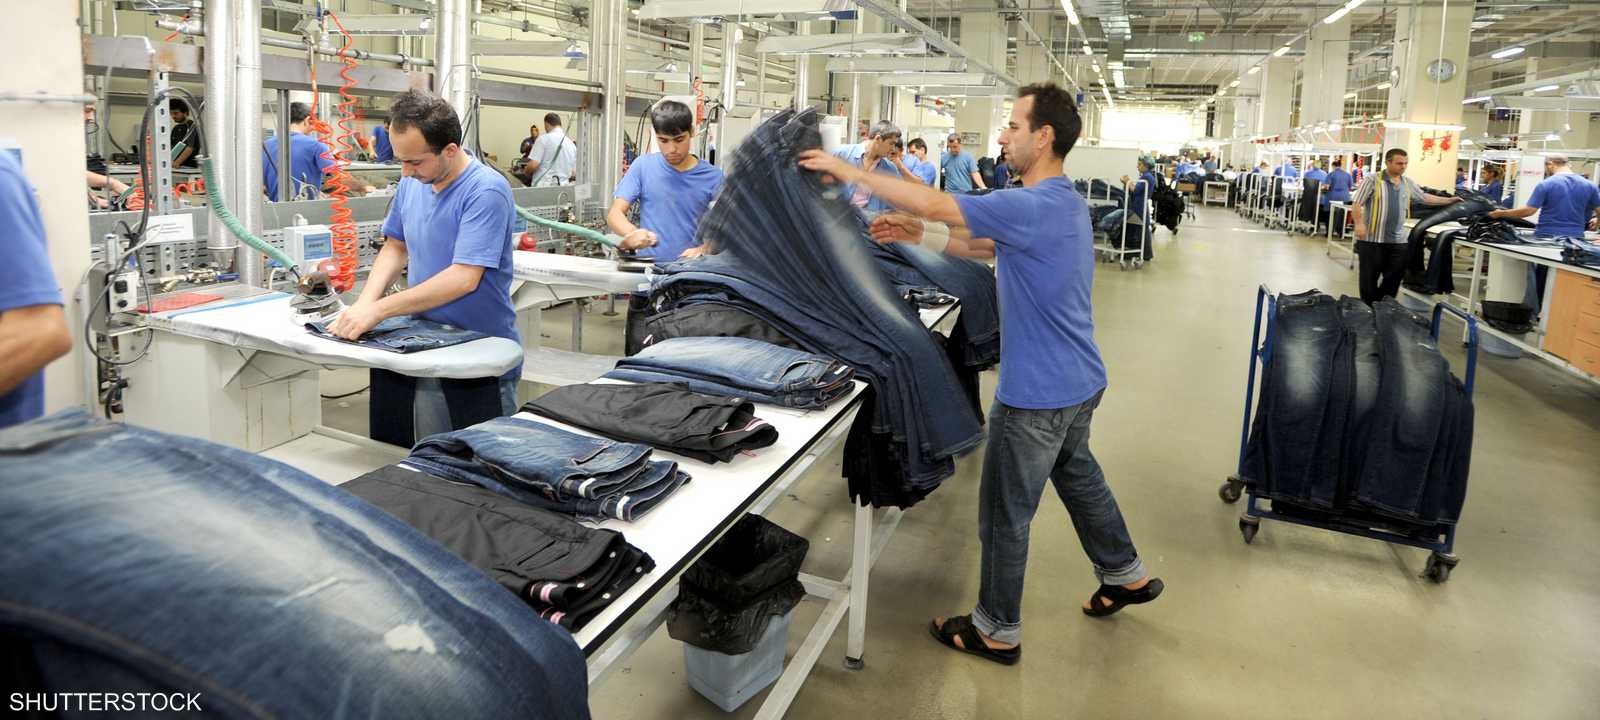 مصنع ملابس في تركيا